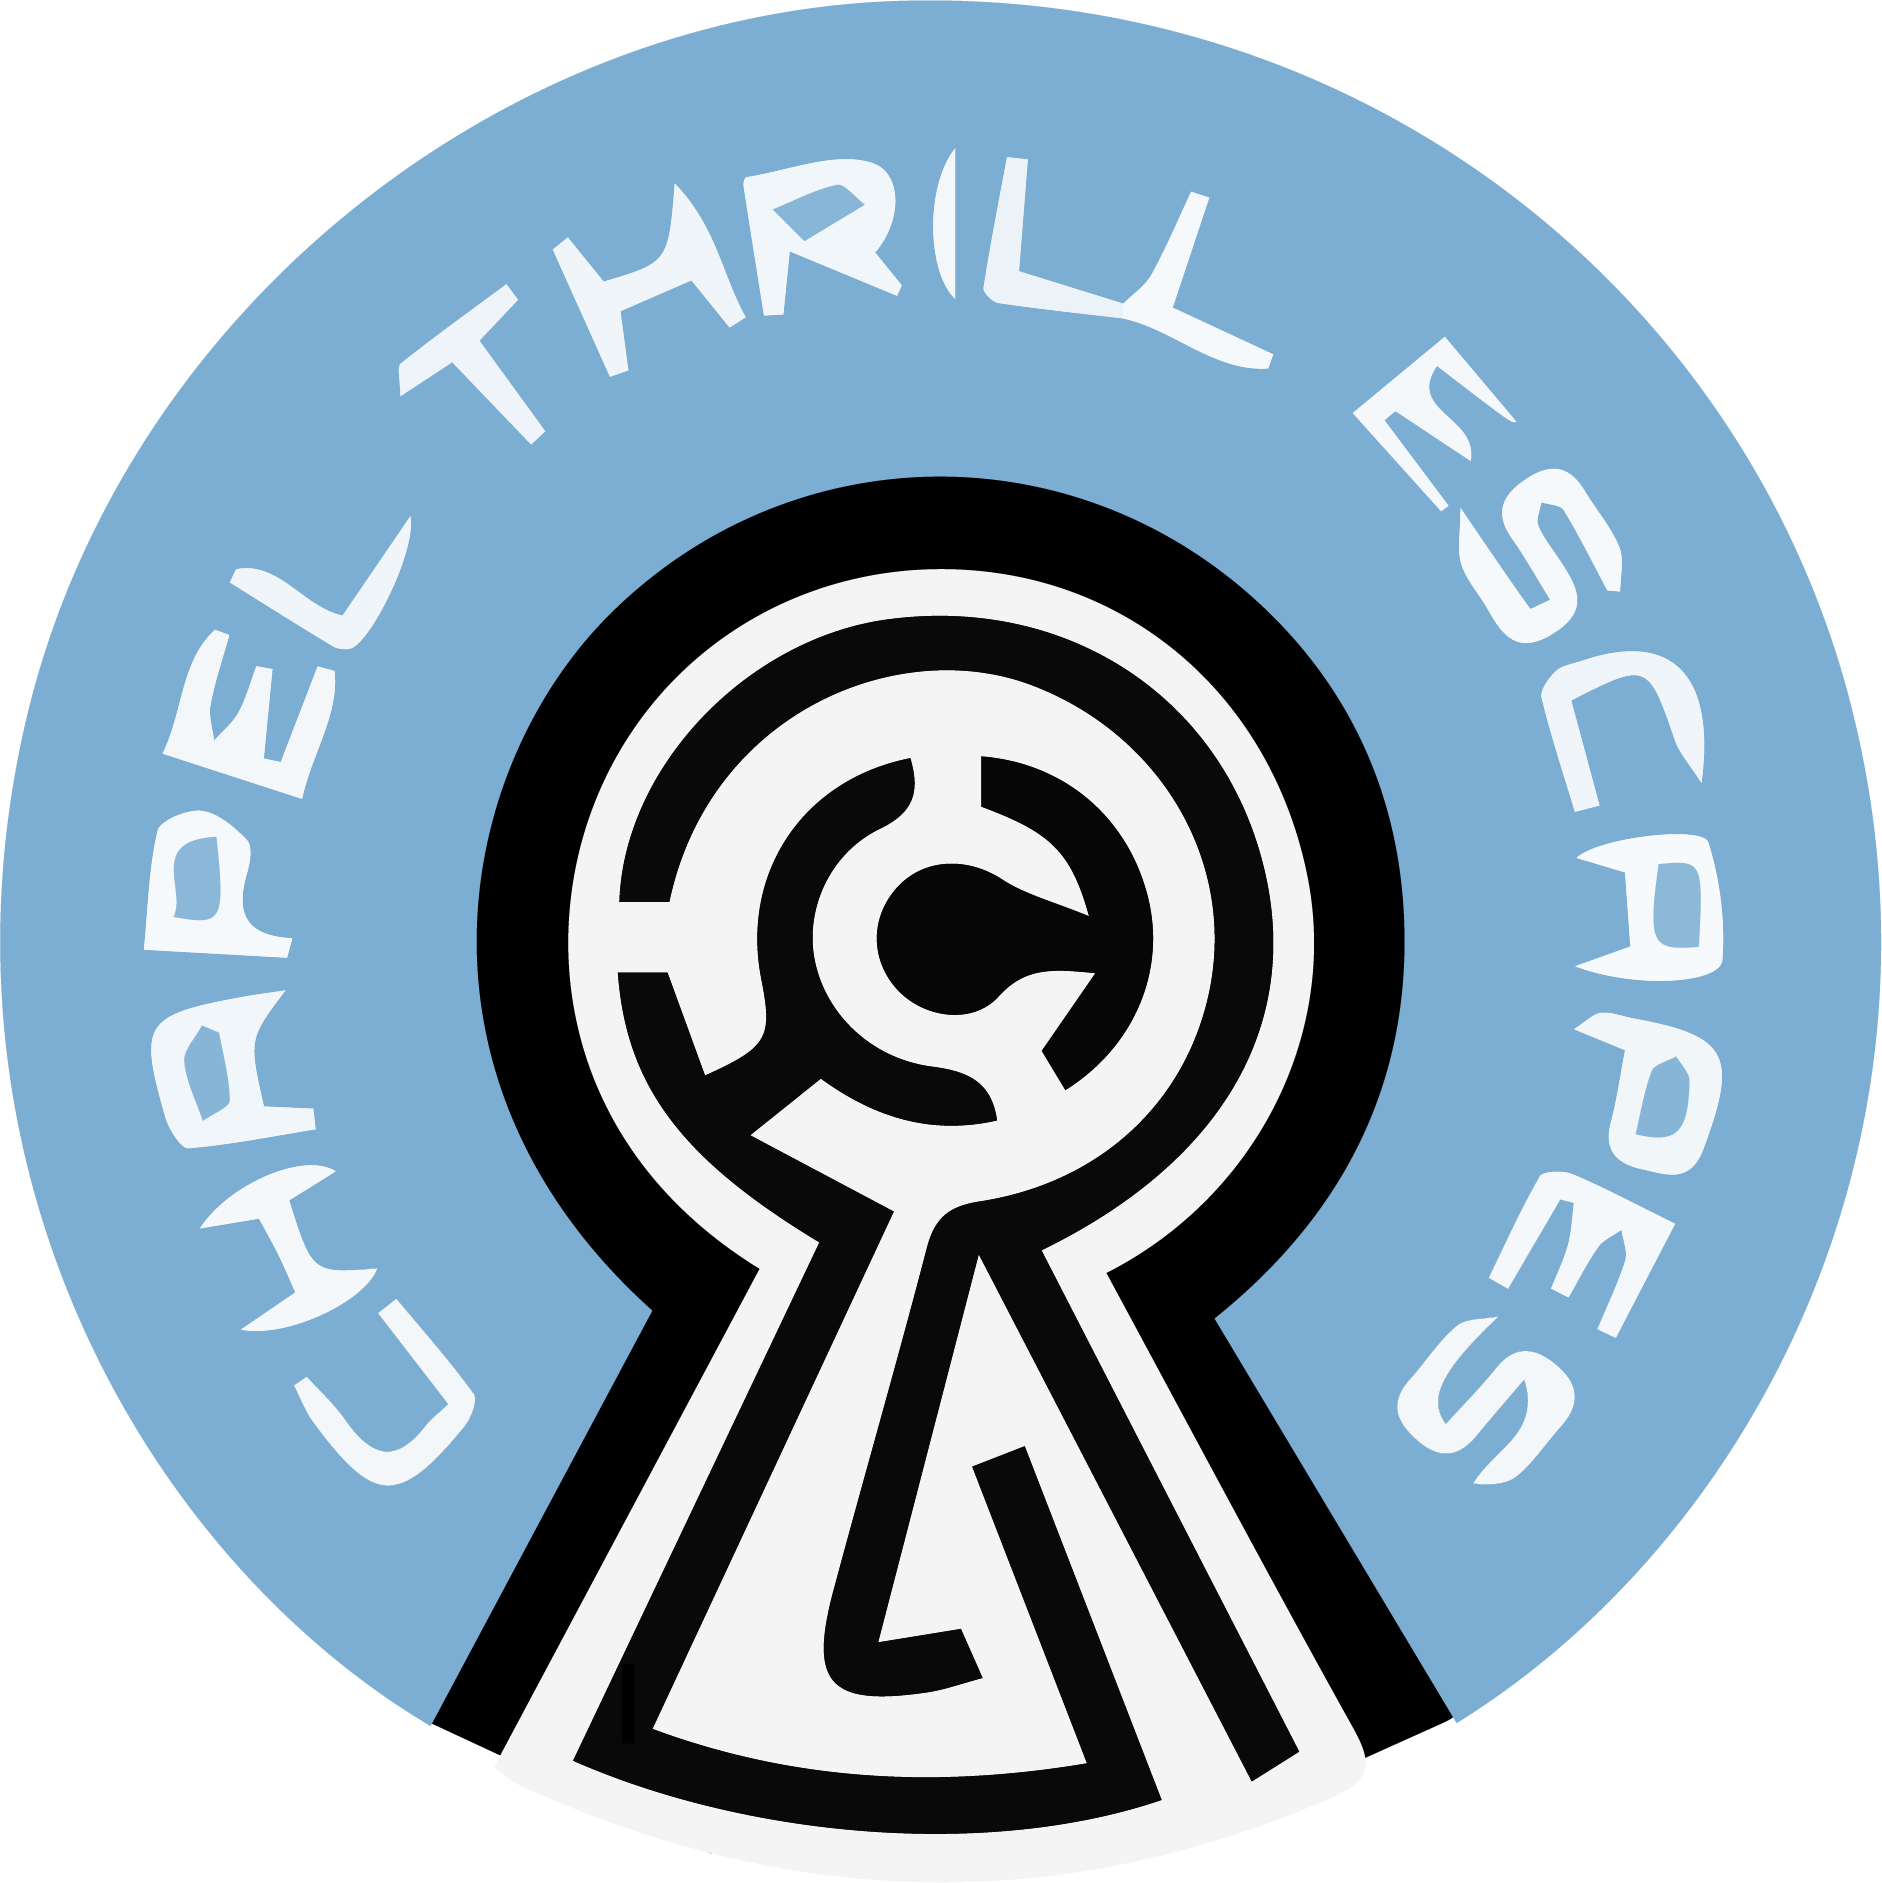 Chapel Thrill Escapes